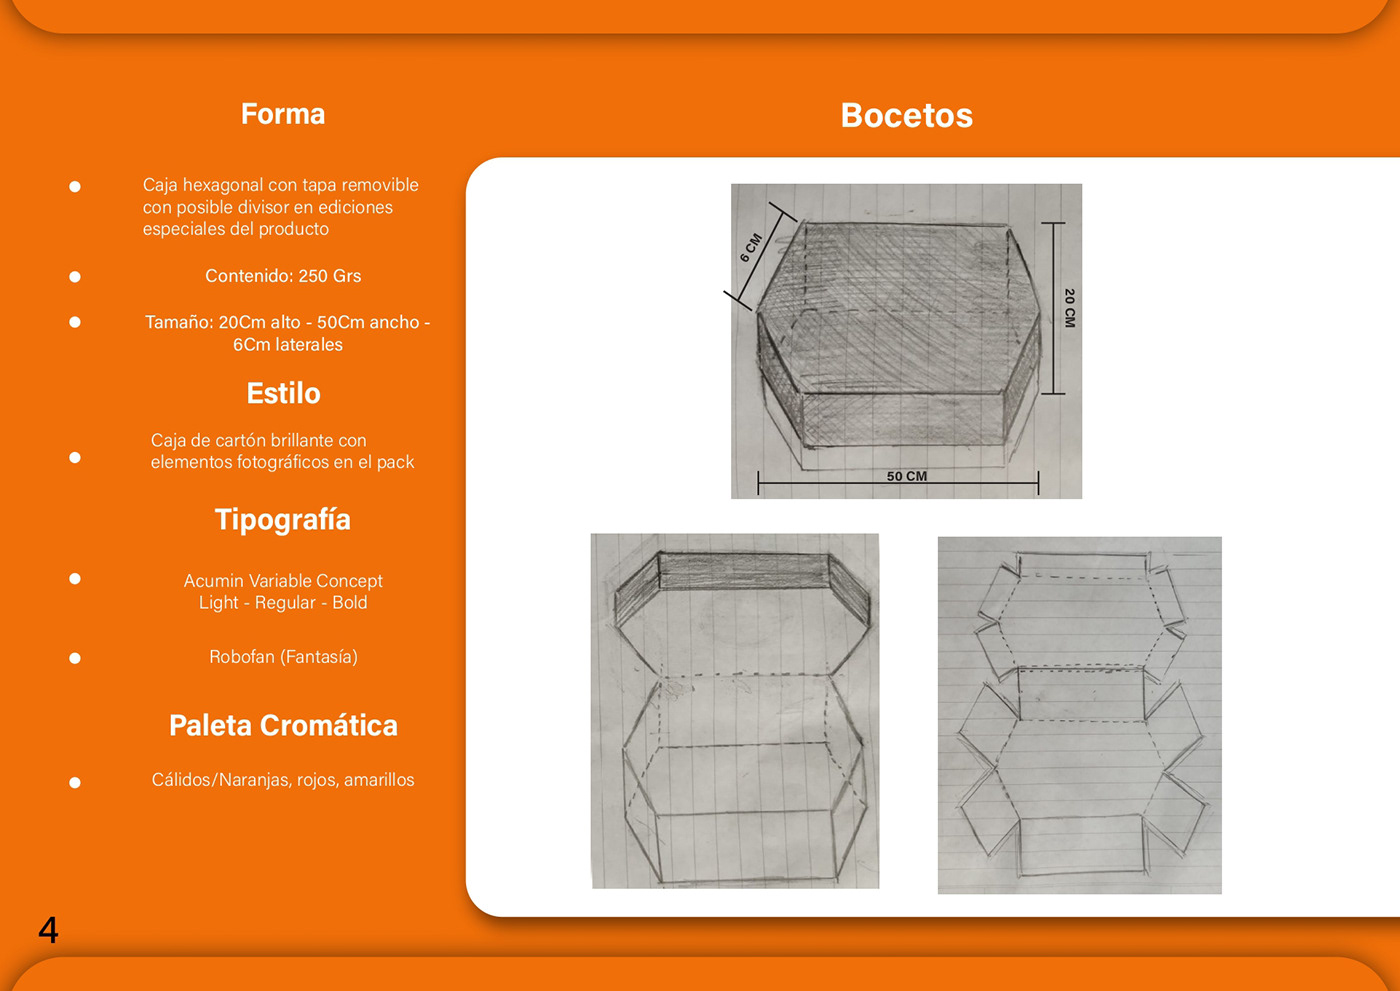 3D model doritos photoshop cinema 4d Illustrator Render Packaging branding  product design 